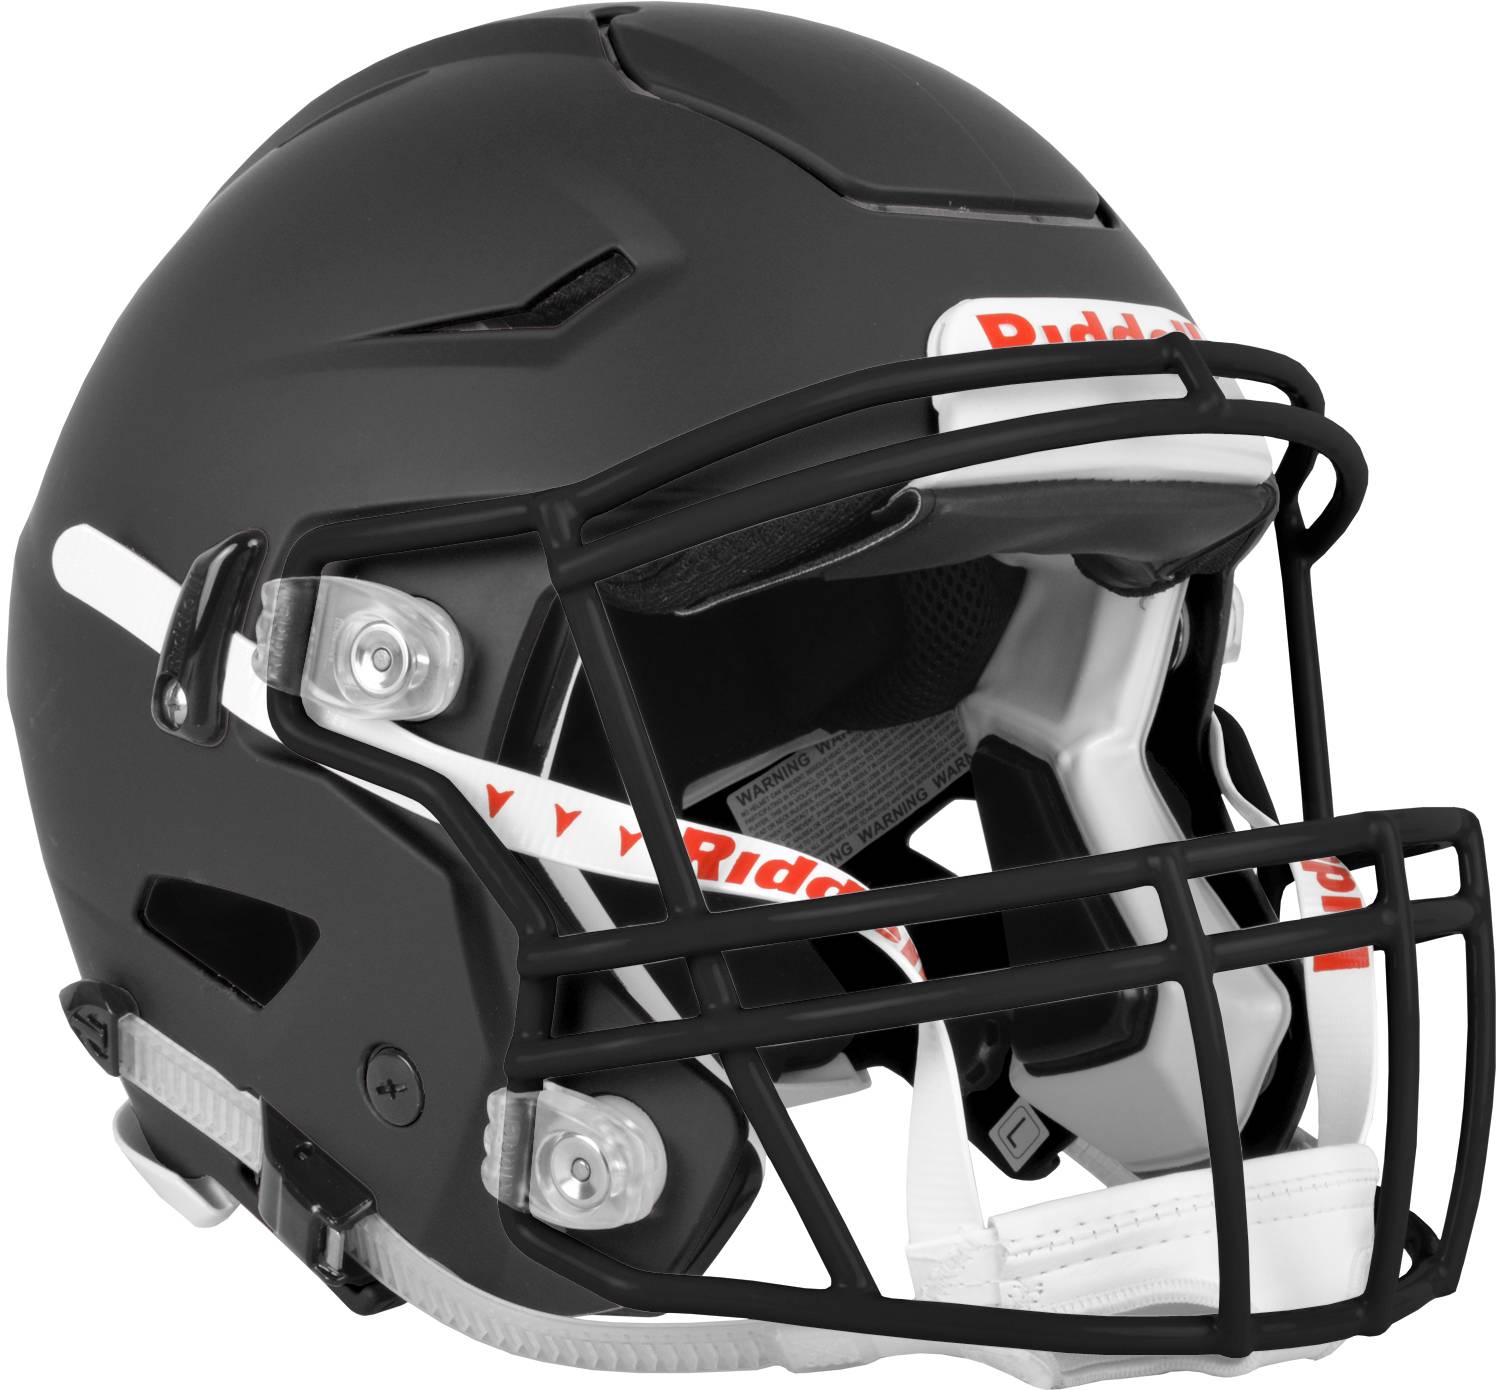 Adult Football Helmets 8